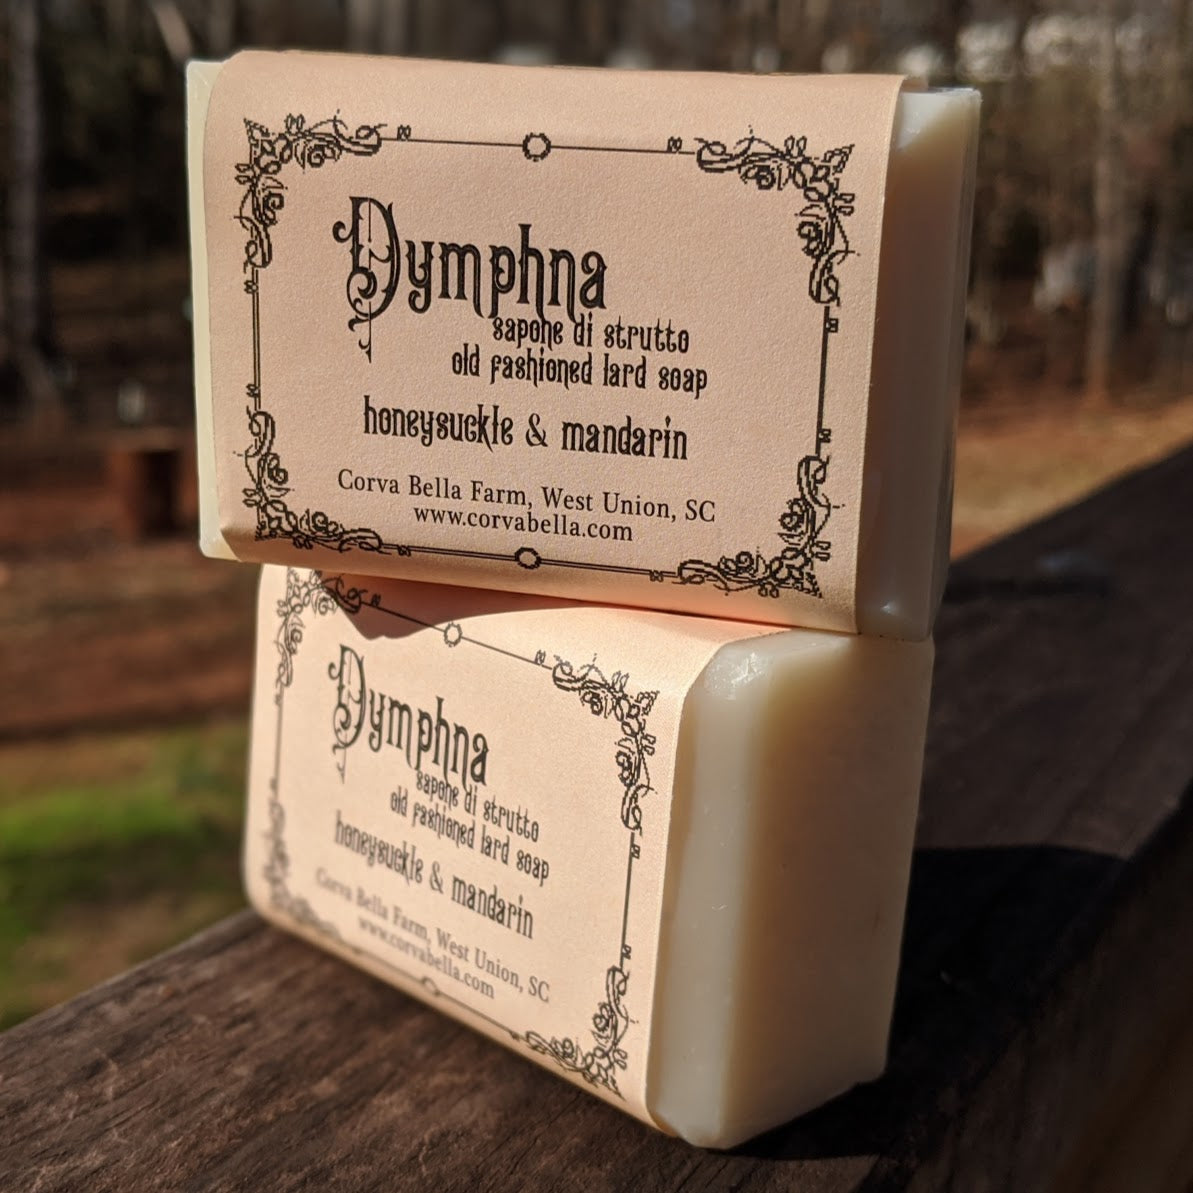 DYMPHNA lard soap - Honeysuckle & Mandarin